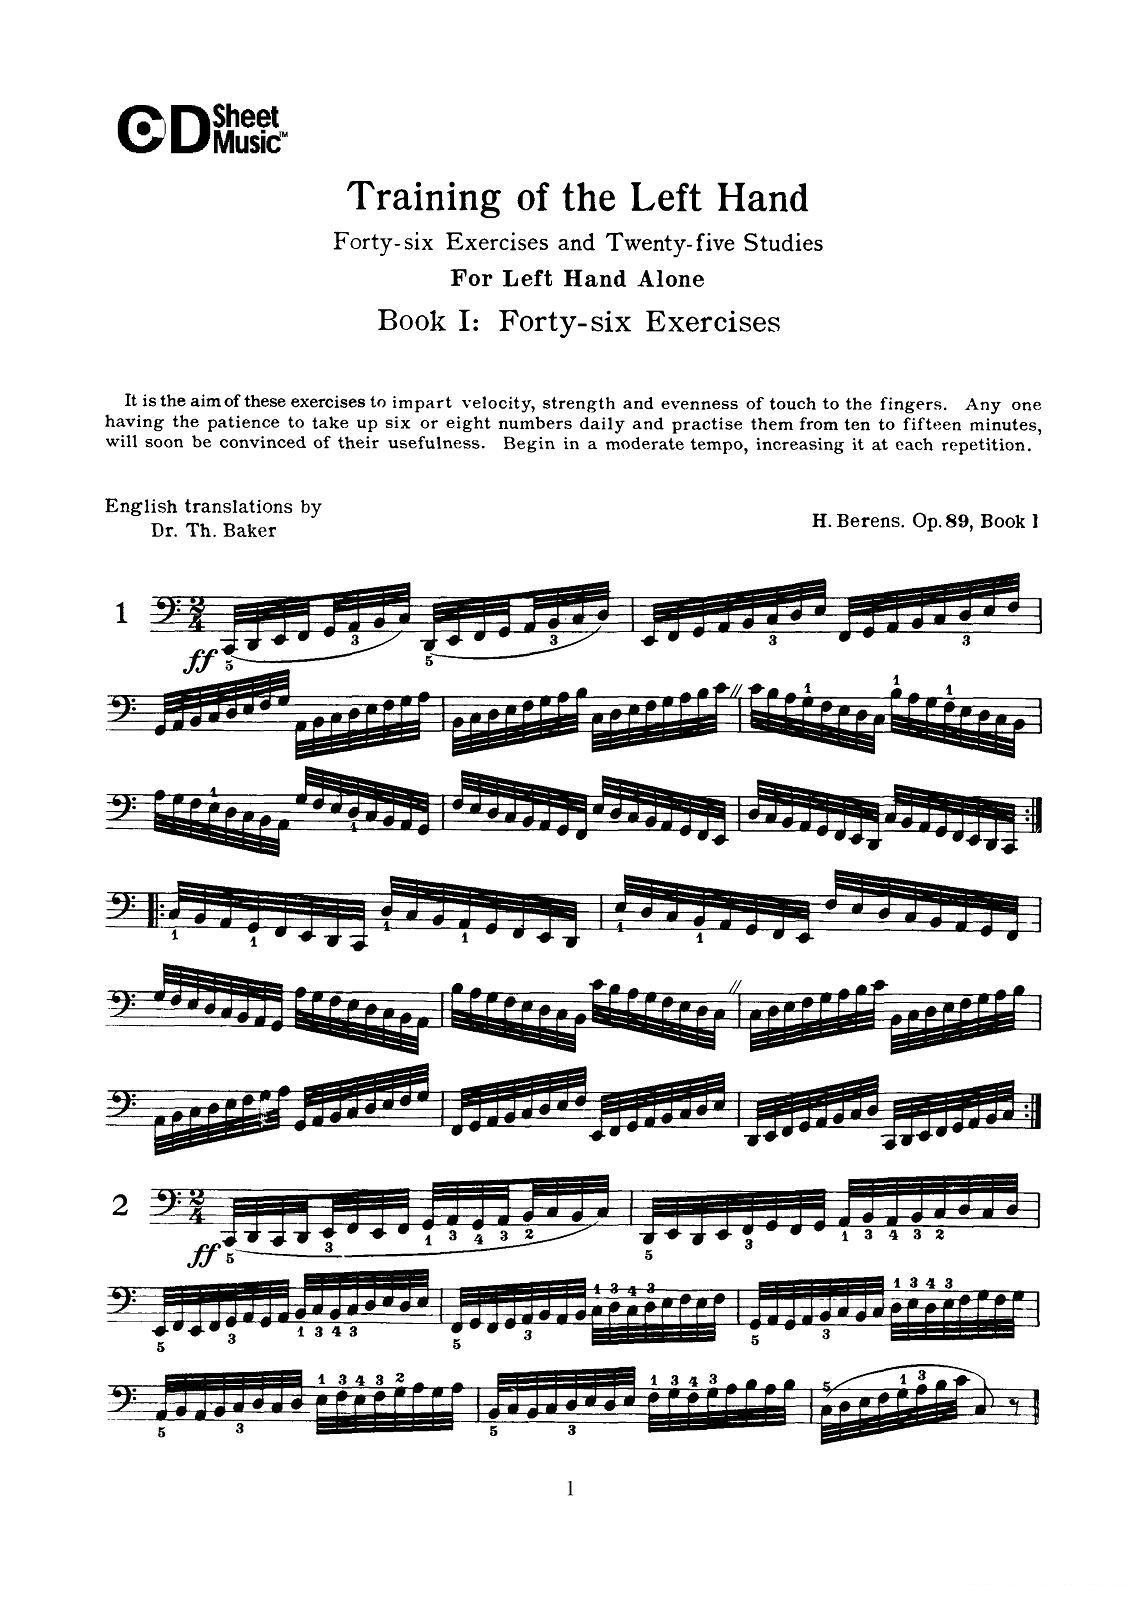 贝伦斯钢琴 左手训练 练习曲 上册46首 钢琴谱 歌谱简谱大全